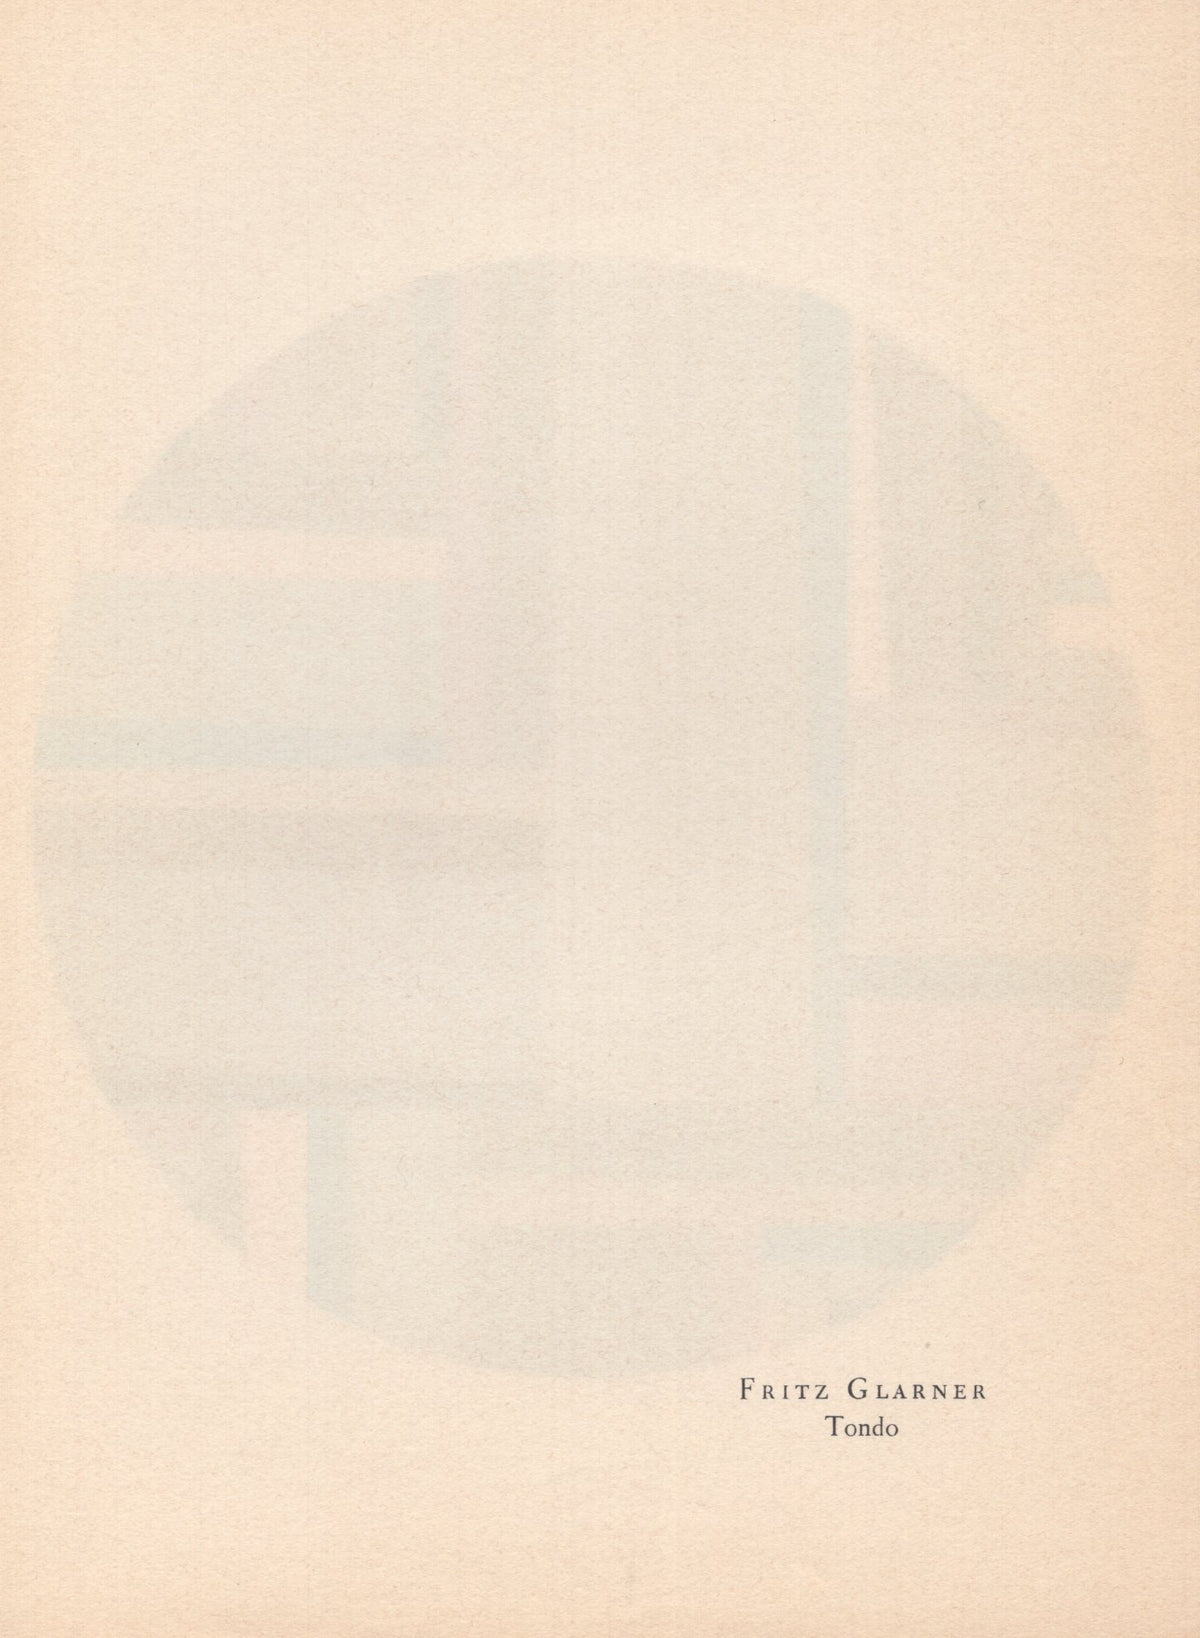 Fritz Glarner - &quot;Tondo&quot; - Mourlot Press 1964 Lithograph - 7.5 x 10&quot;